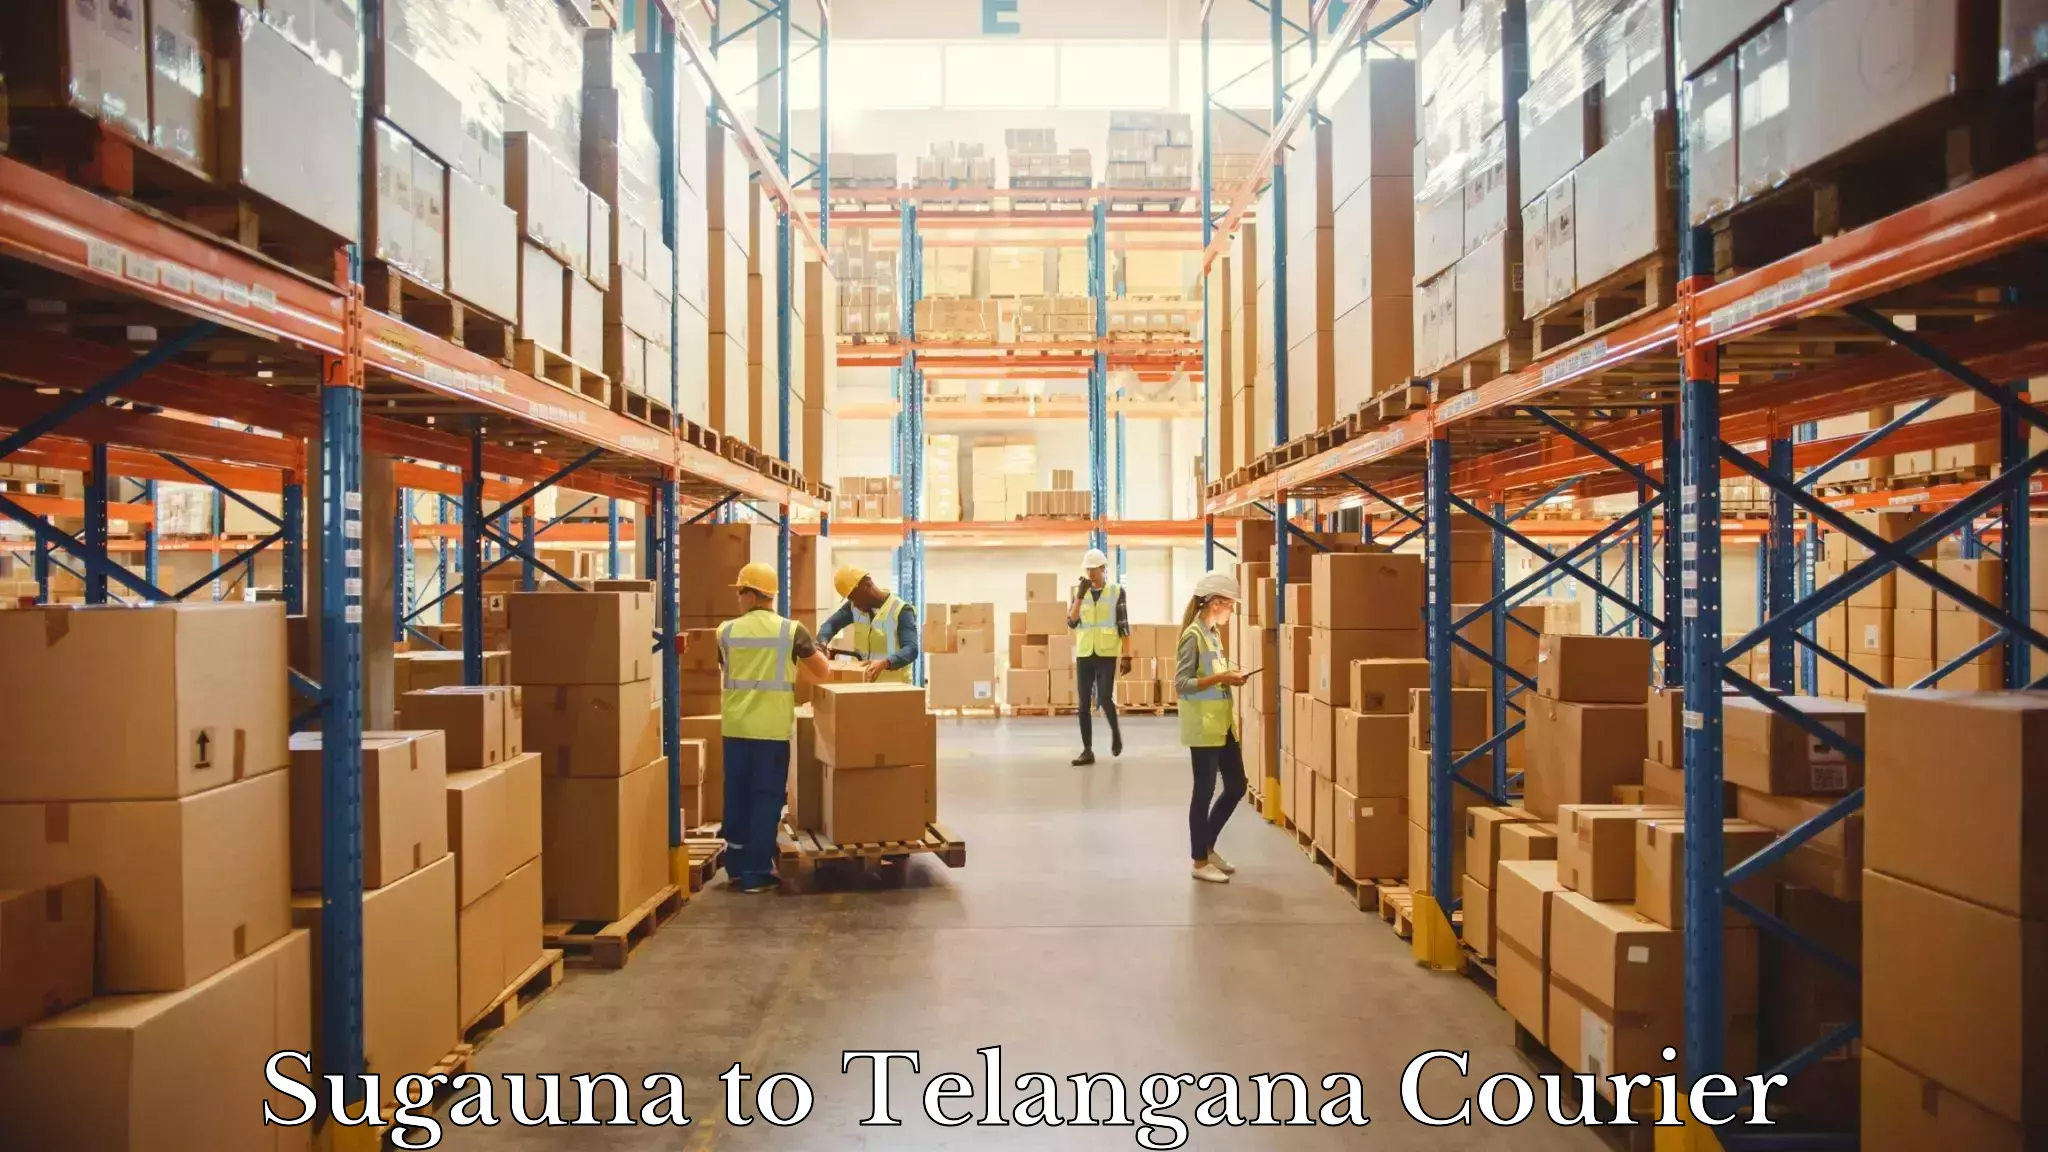 High-capacity parcel service Sugauna to Bhuvanagiri